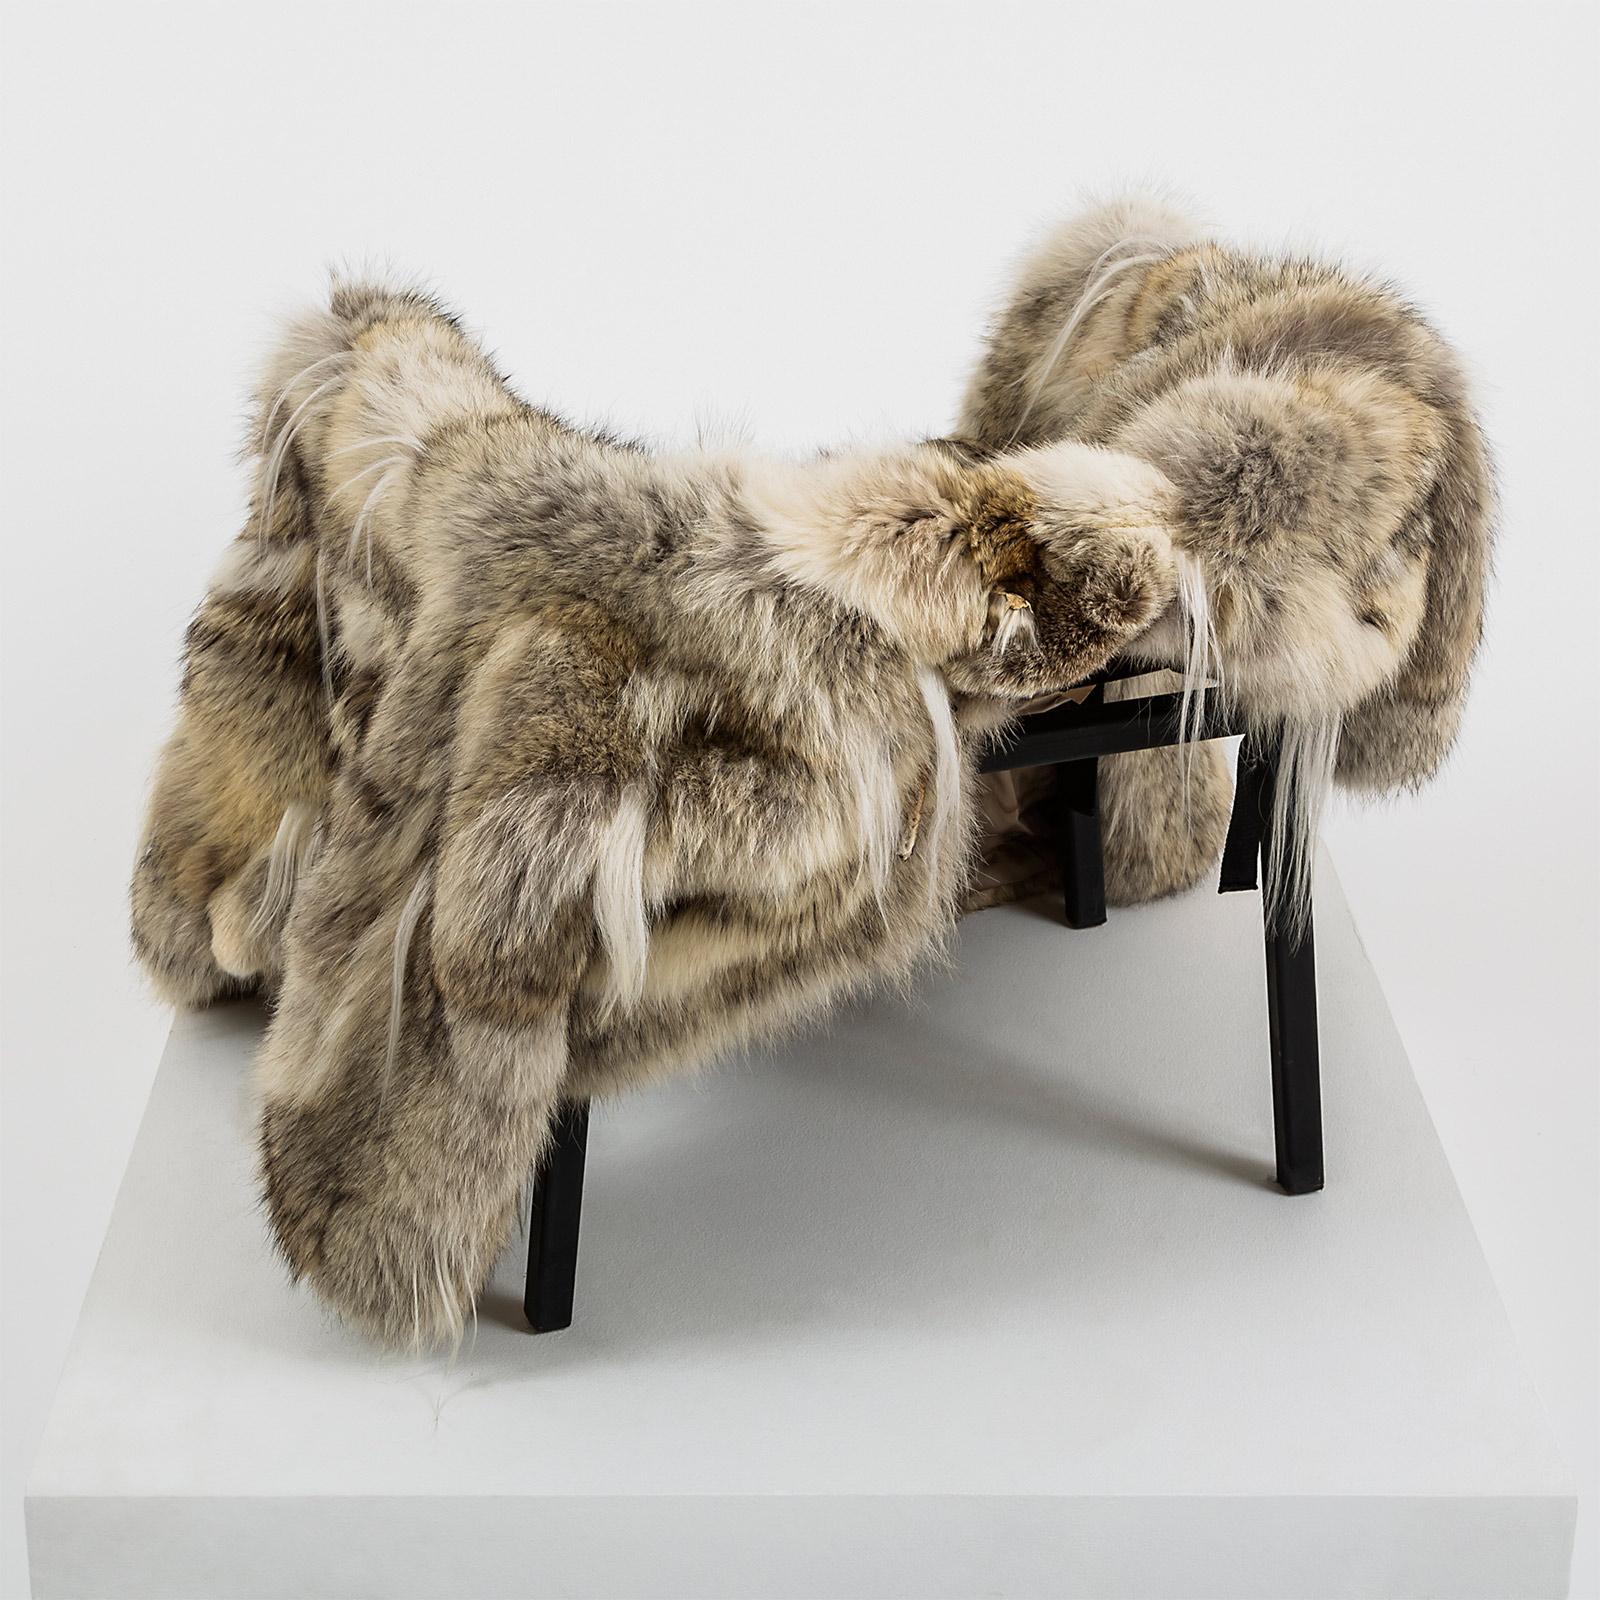 Un cadre de chaise en acier noir. Un manteau de fourrure (loup, chèvre) de taille M/L. Des sangles sont attachées au manteau pour le transformer en siège, rendant ainsi la chaise fonctionnelle et complète.

Matériaux : Cadre de la chaise en acier